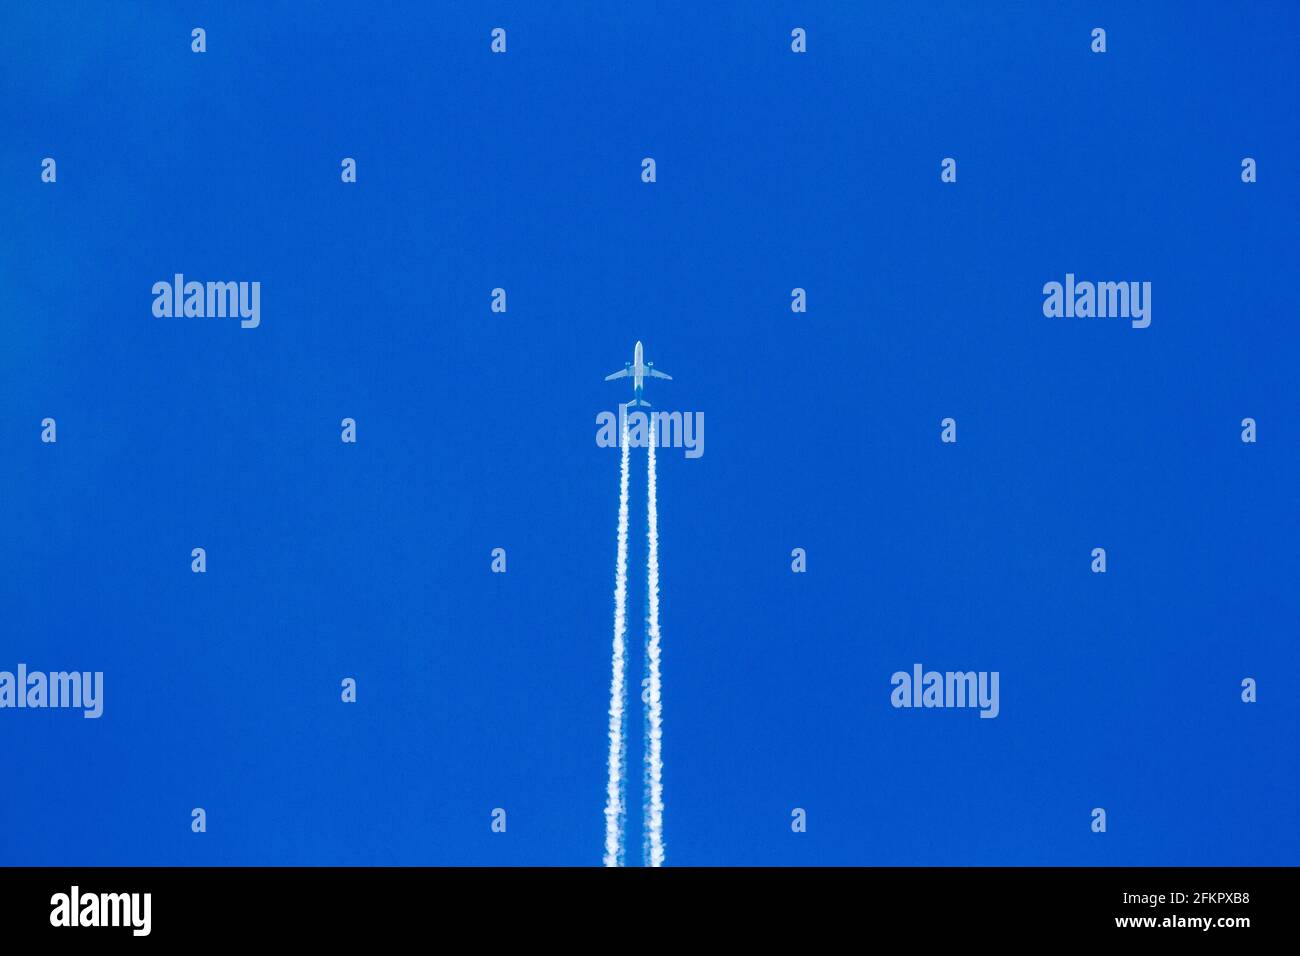 Flugzeug Flugzeug gegen blauen Himmel nimmt mit Dampf Spur Wanderwege Stockfoto